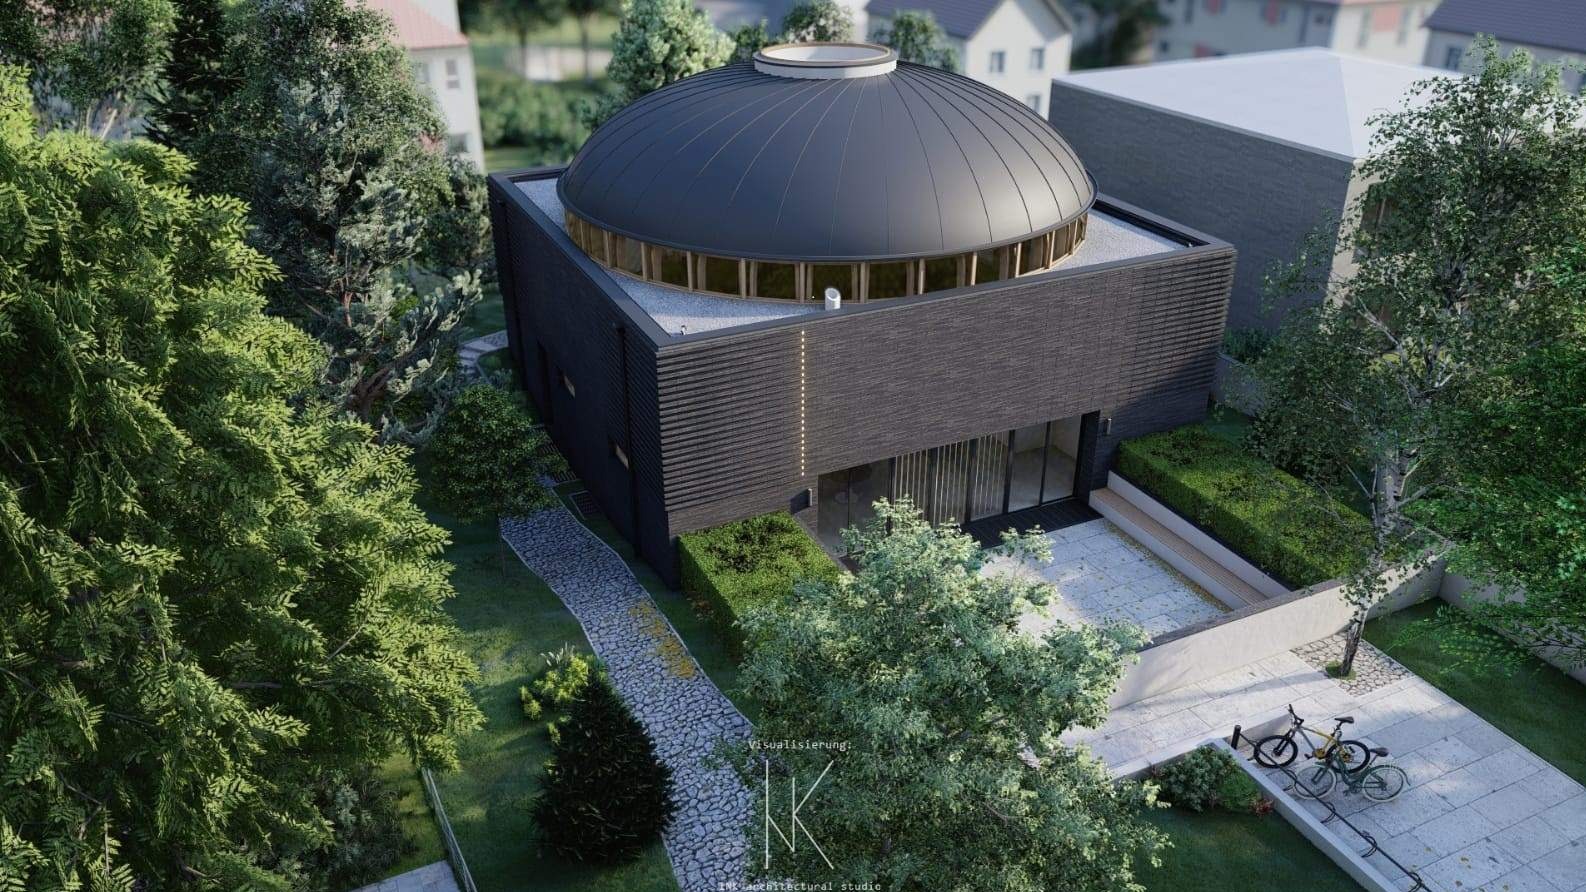 Prva bošnjačka džamija u Minhenu - Simbol slobode i gradnje ljepše i uspješnije budućnosti